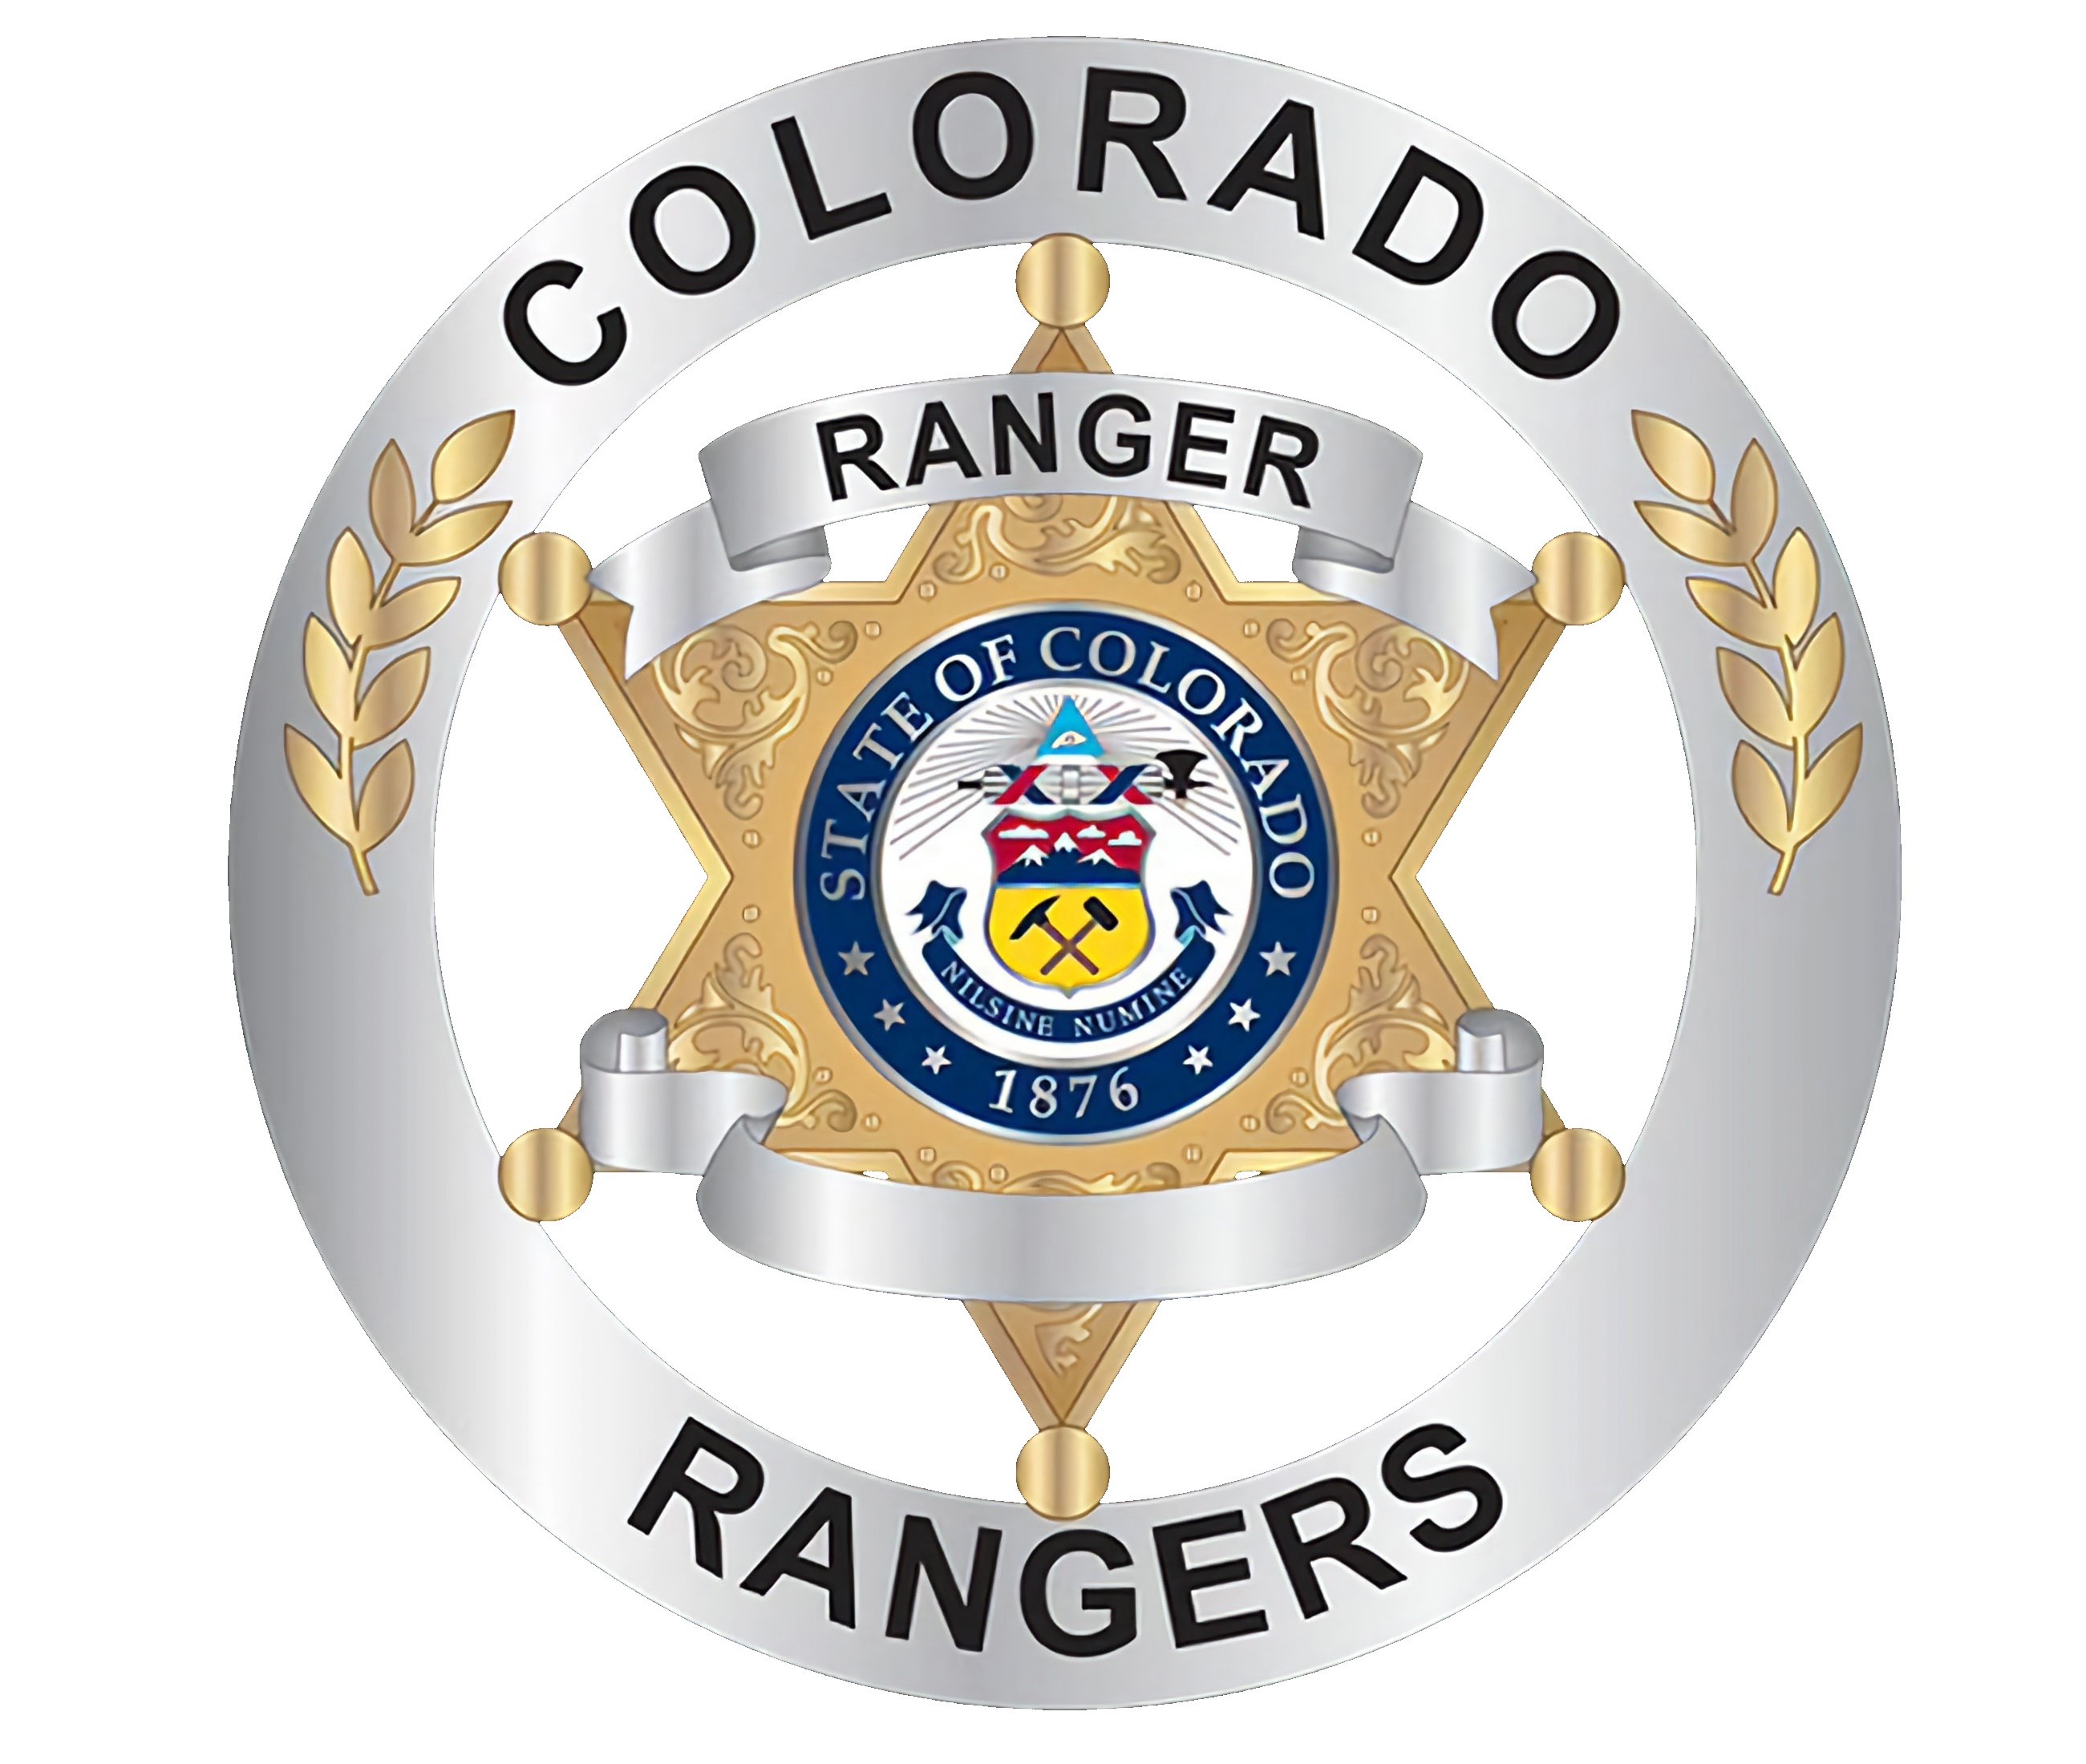 Colorado Law Enforcement Rangers